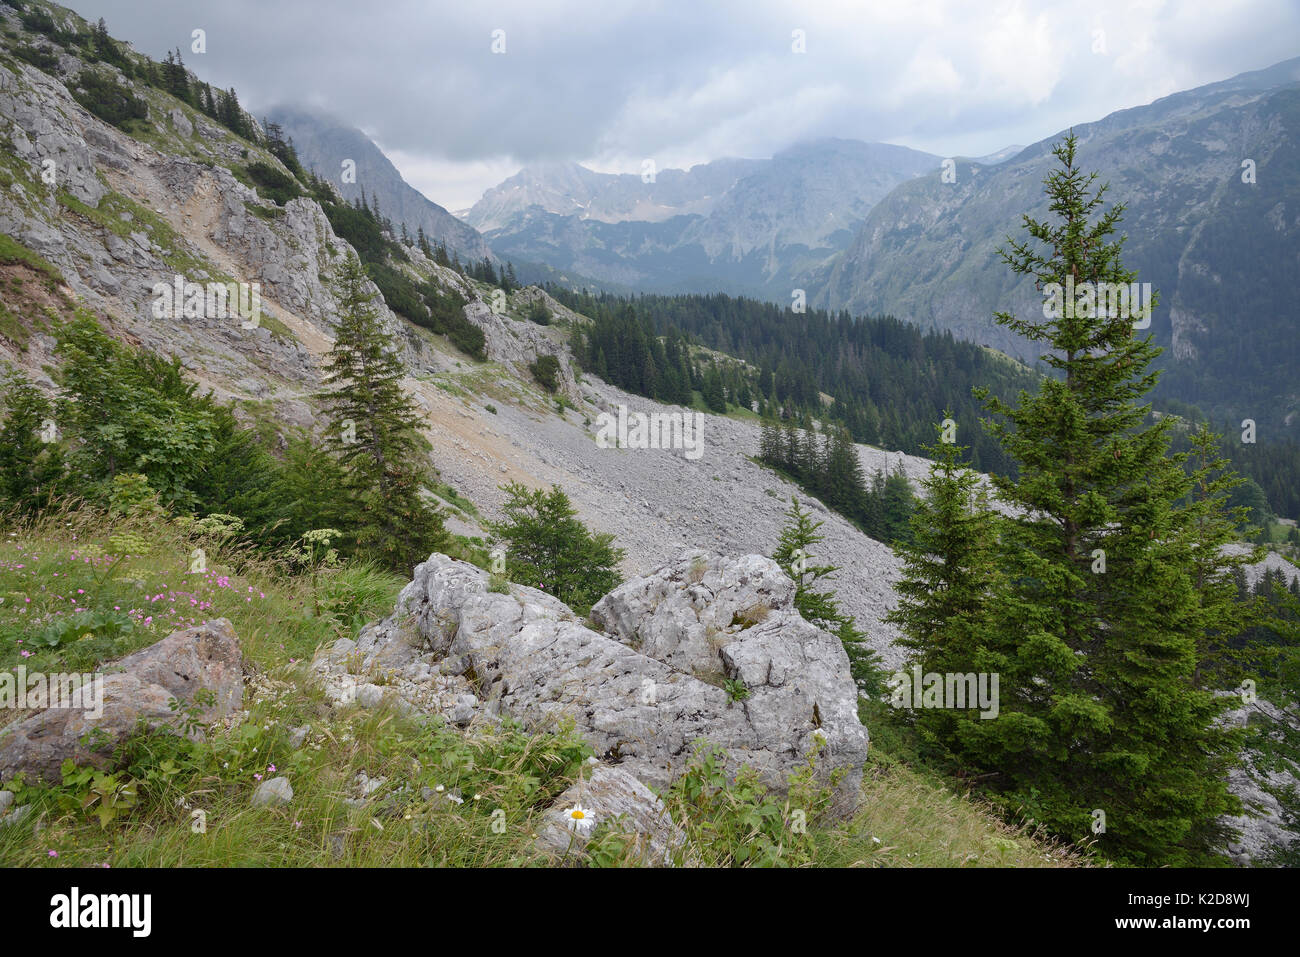 D'éboulis et de blocs de calcaire sur les pentes du mont Maglic, la plus haute montagne de la Bosnie, en vue de Velika Vitao peak au Monténégro de l'autre côté de la frontière, à proximité du Parc National de Sutjeska, Bosnie-Herzégovine, juillet 2014. Banque D'Images